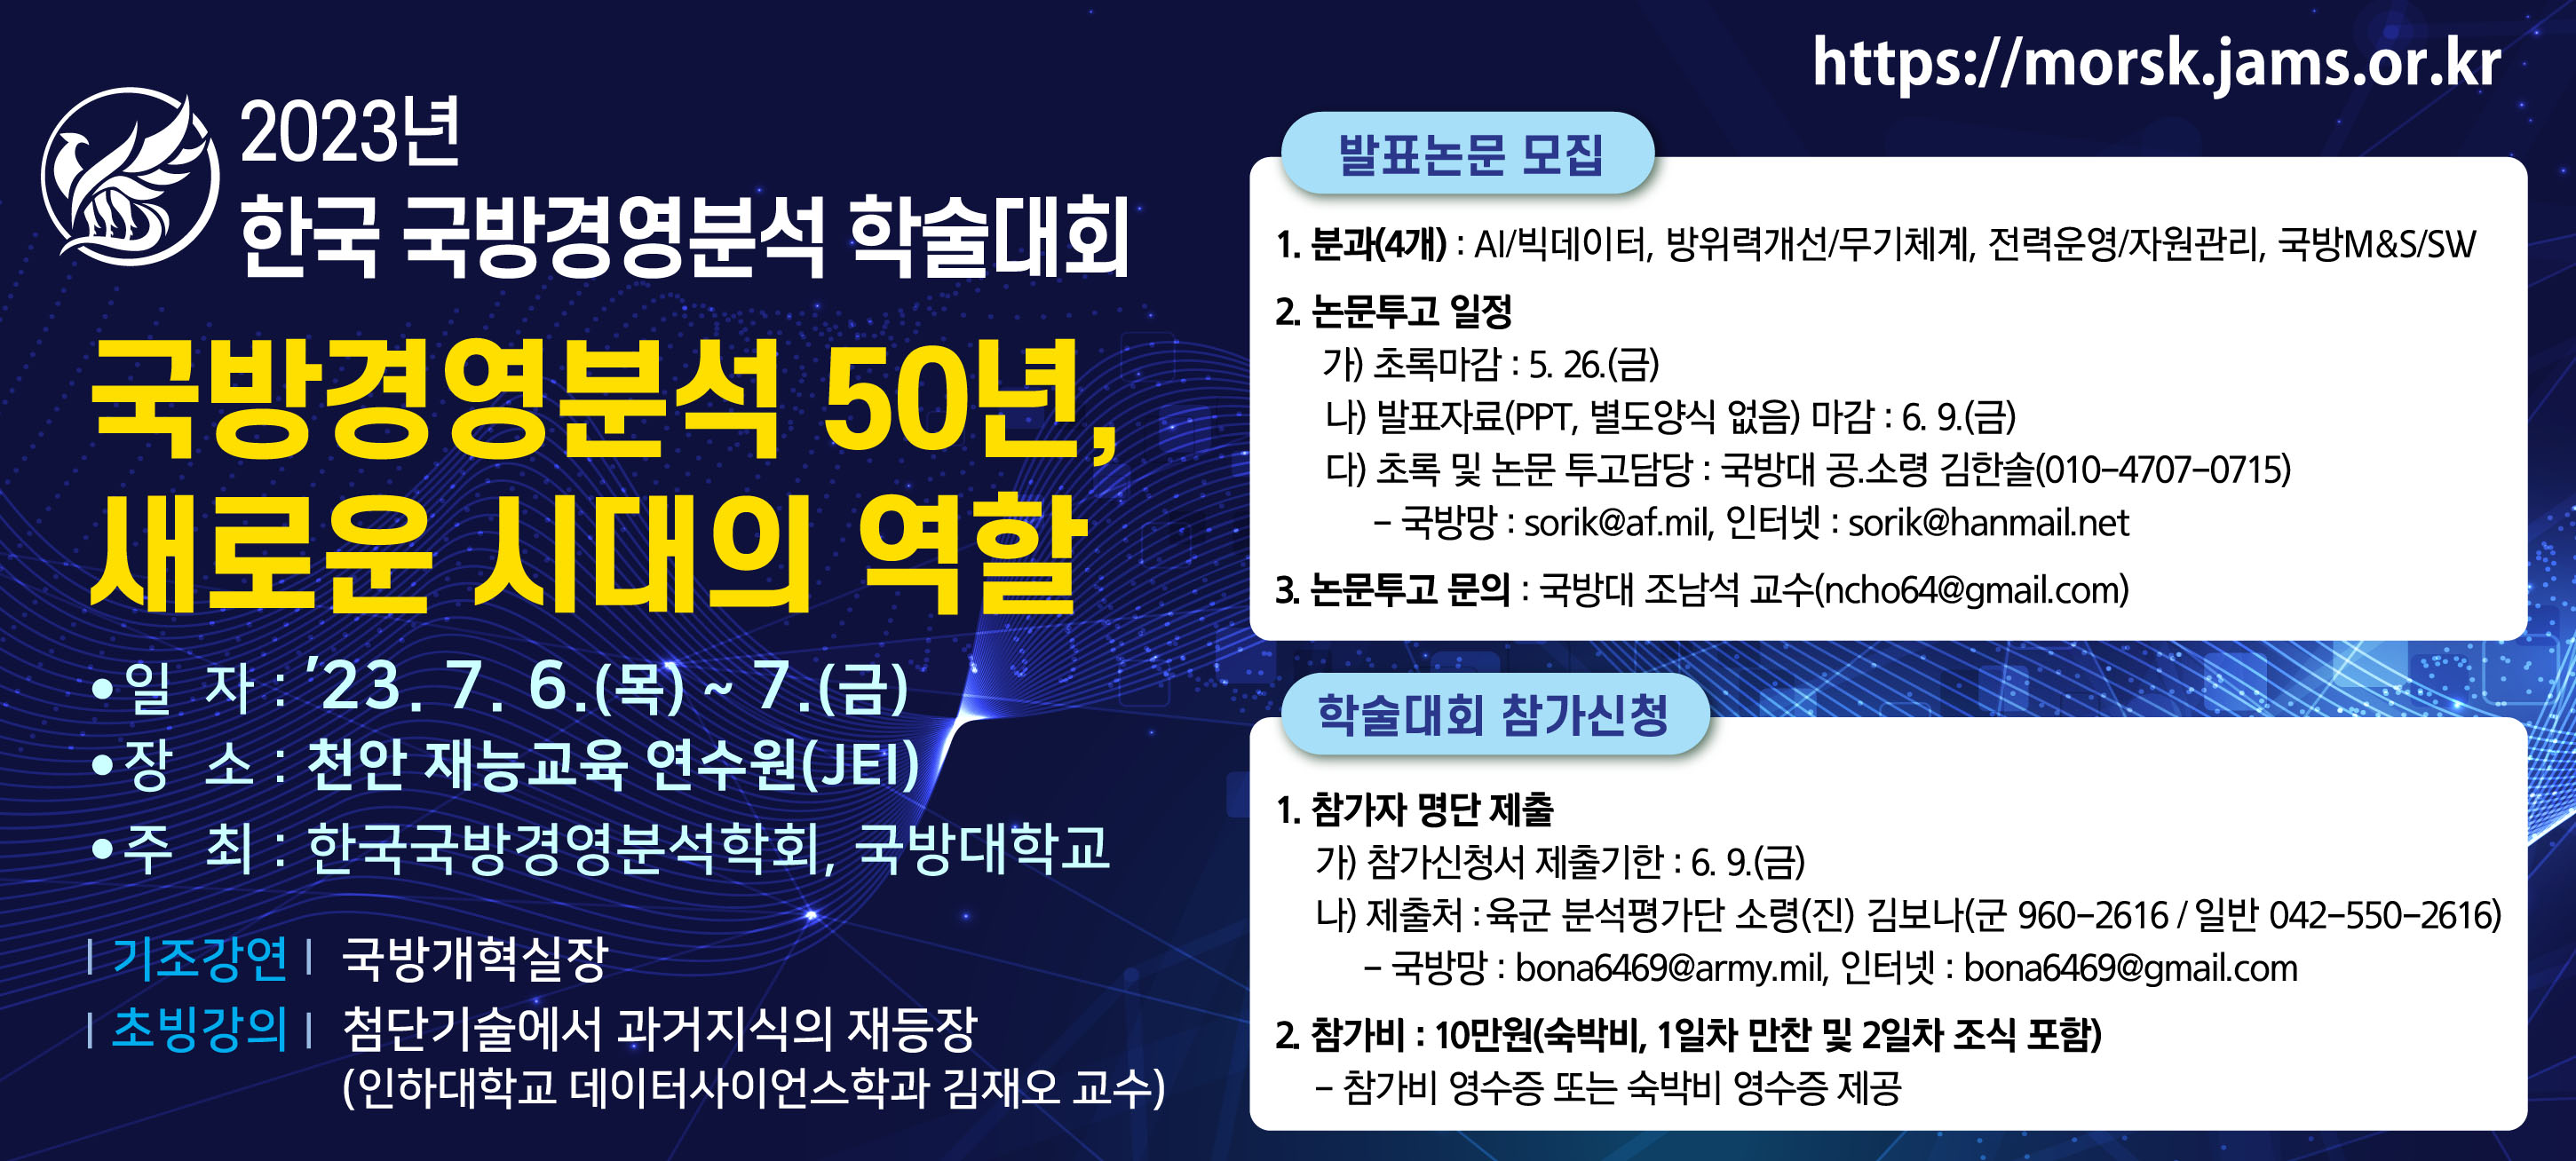 23년 한국국방경영분석 학술대회